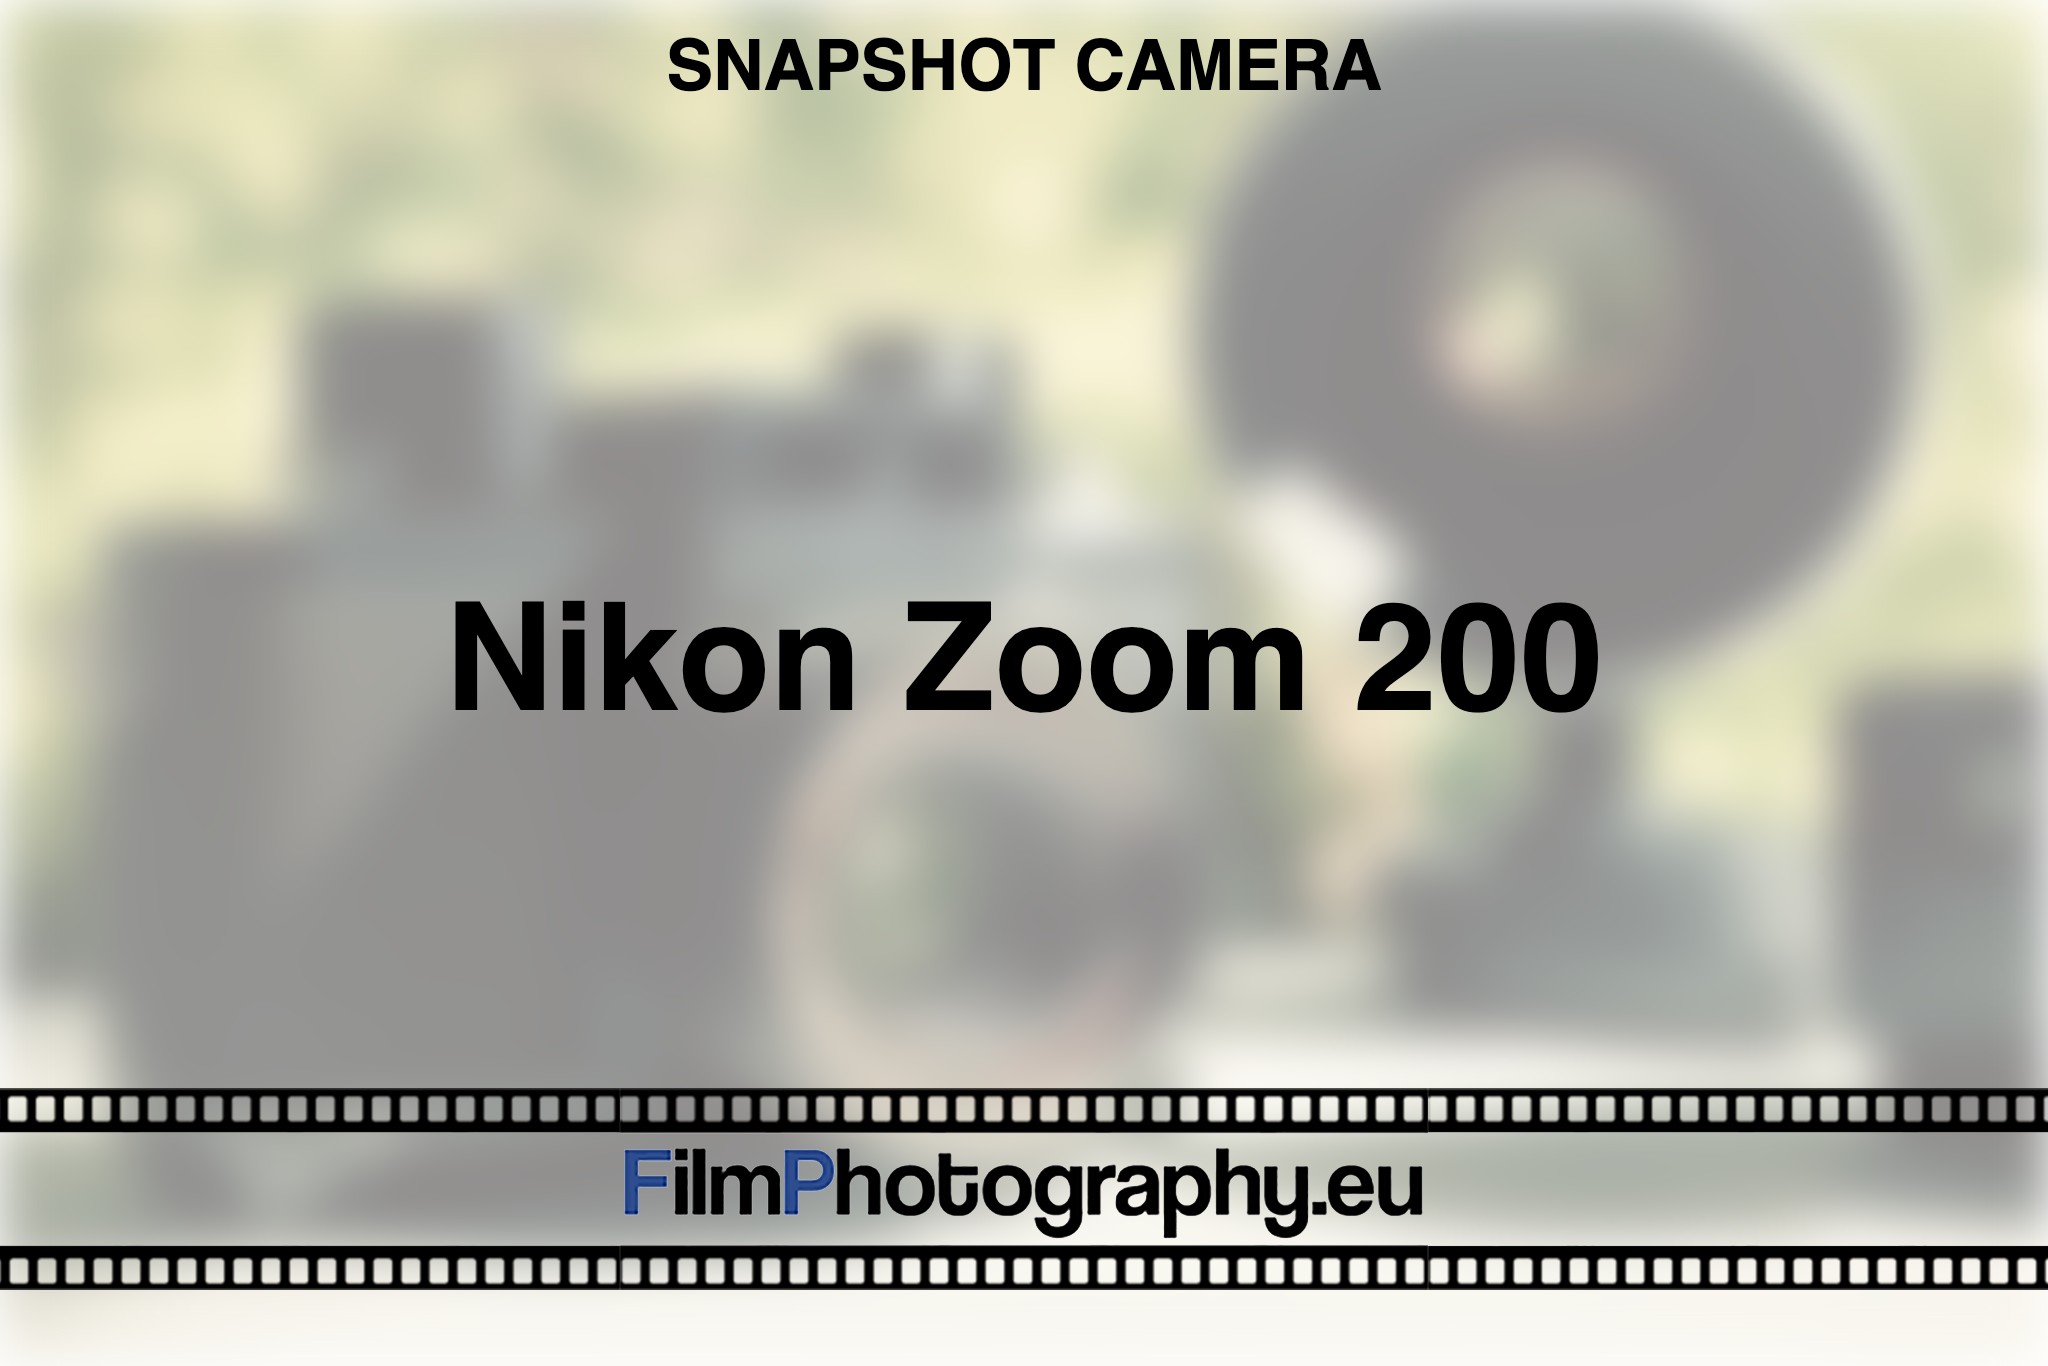 nikon-zoom-200-snapshot-camera-bnv